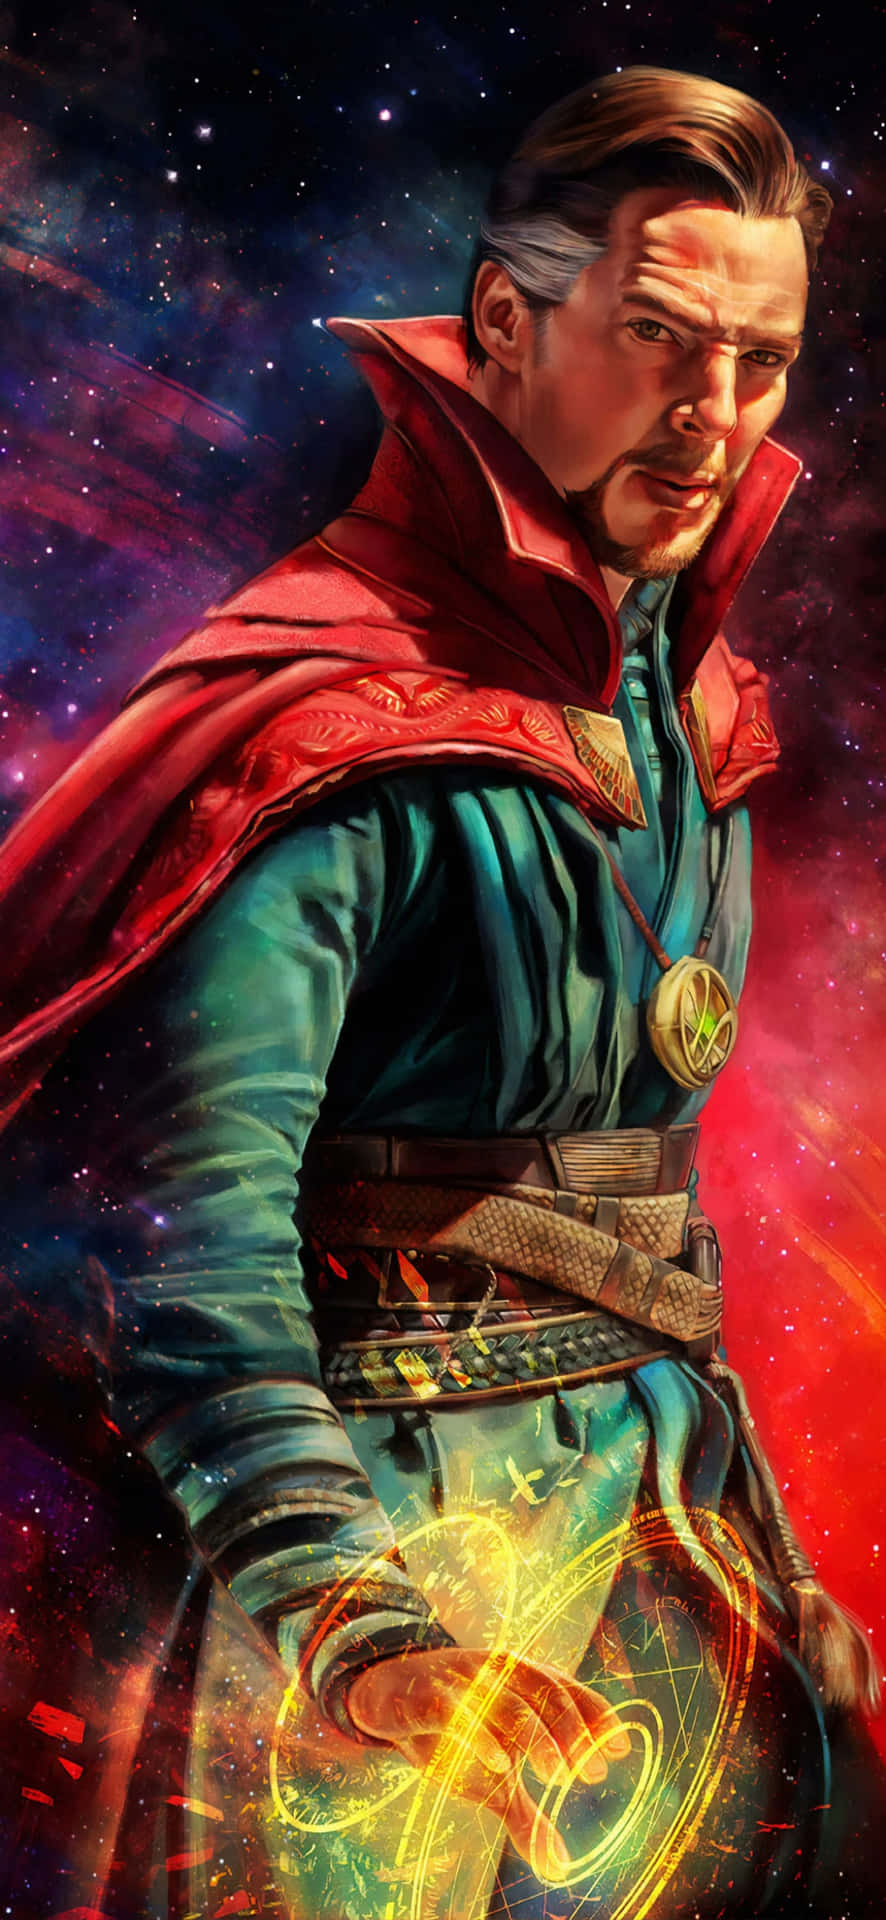 Deroberste Zauberer Doctor Stephen Strange Auf Einem Iphone Wallpaper